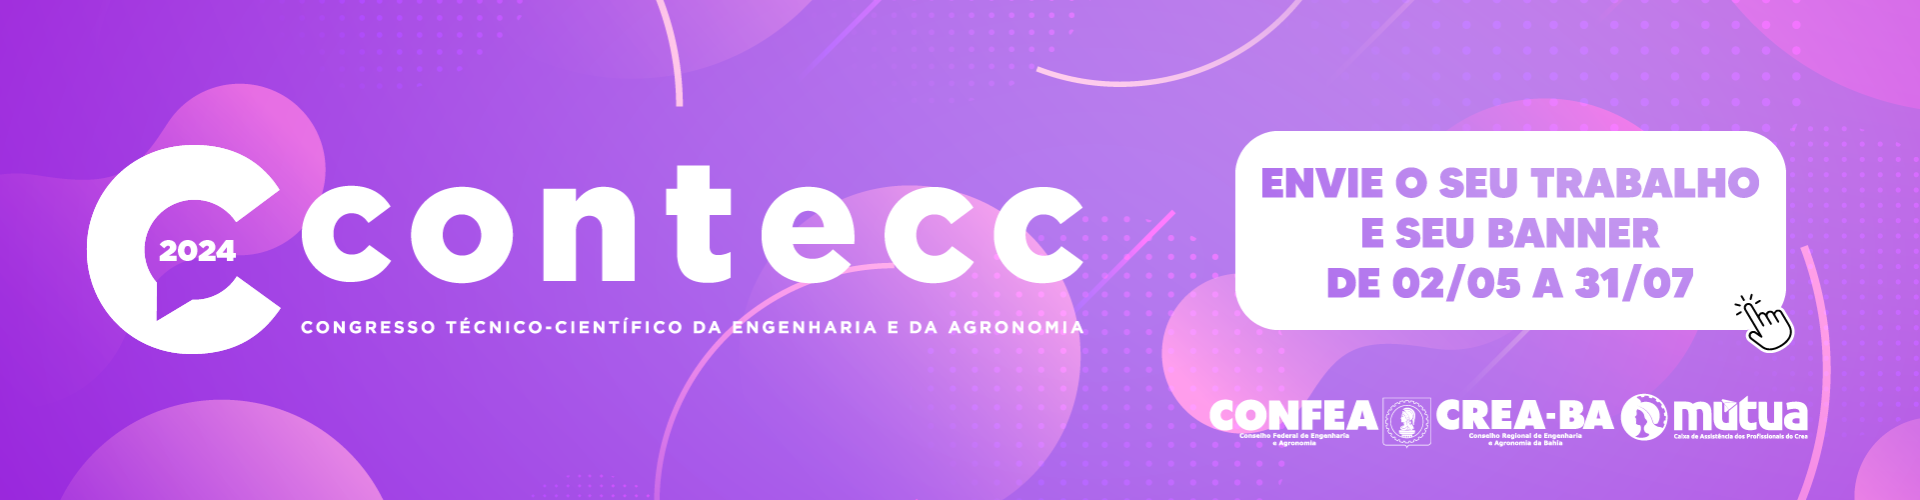 Banner do Contecc